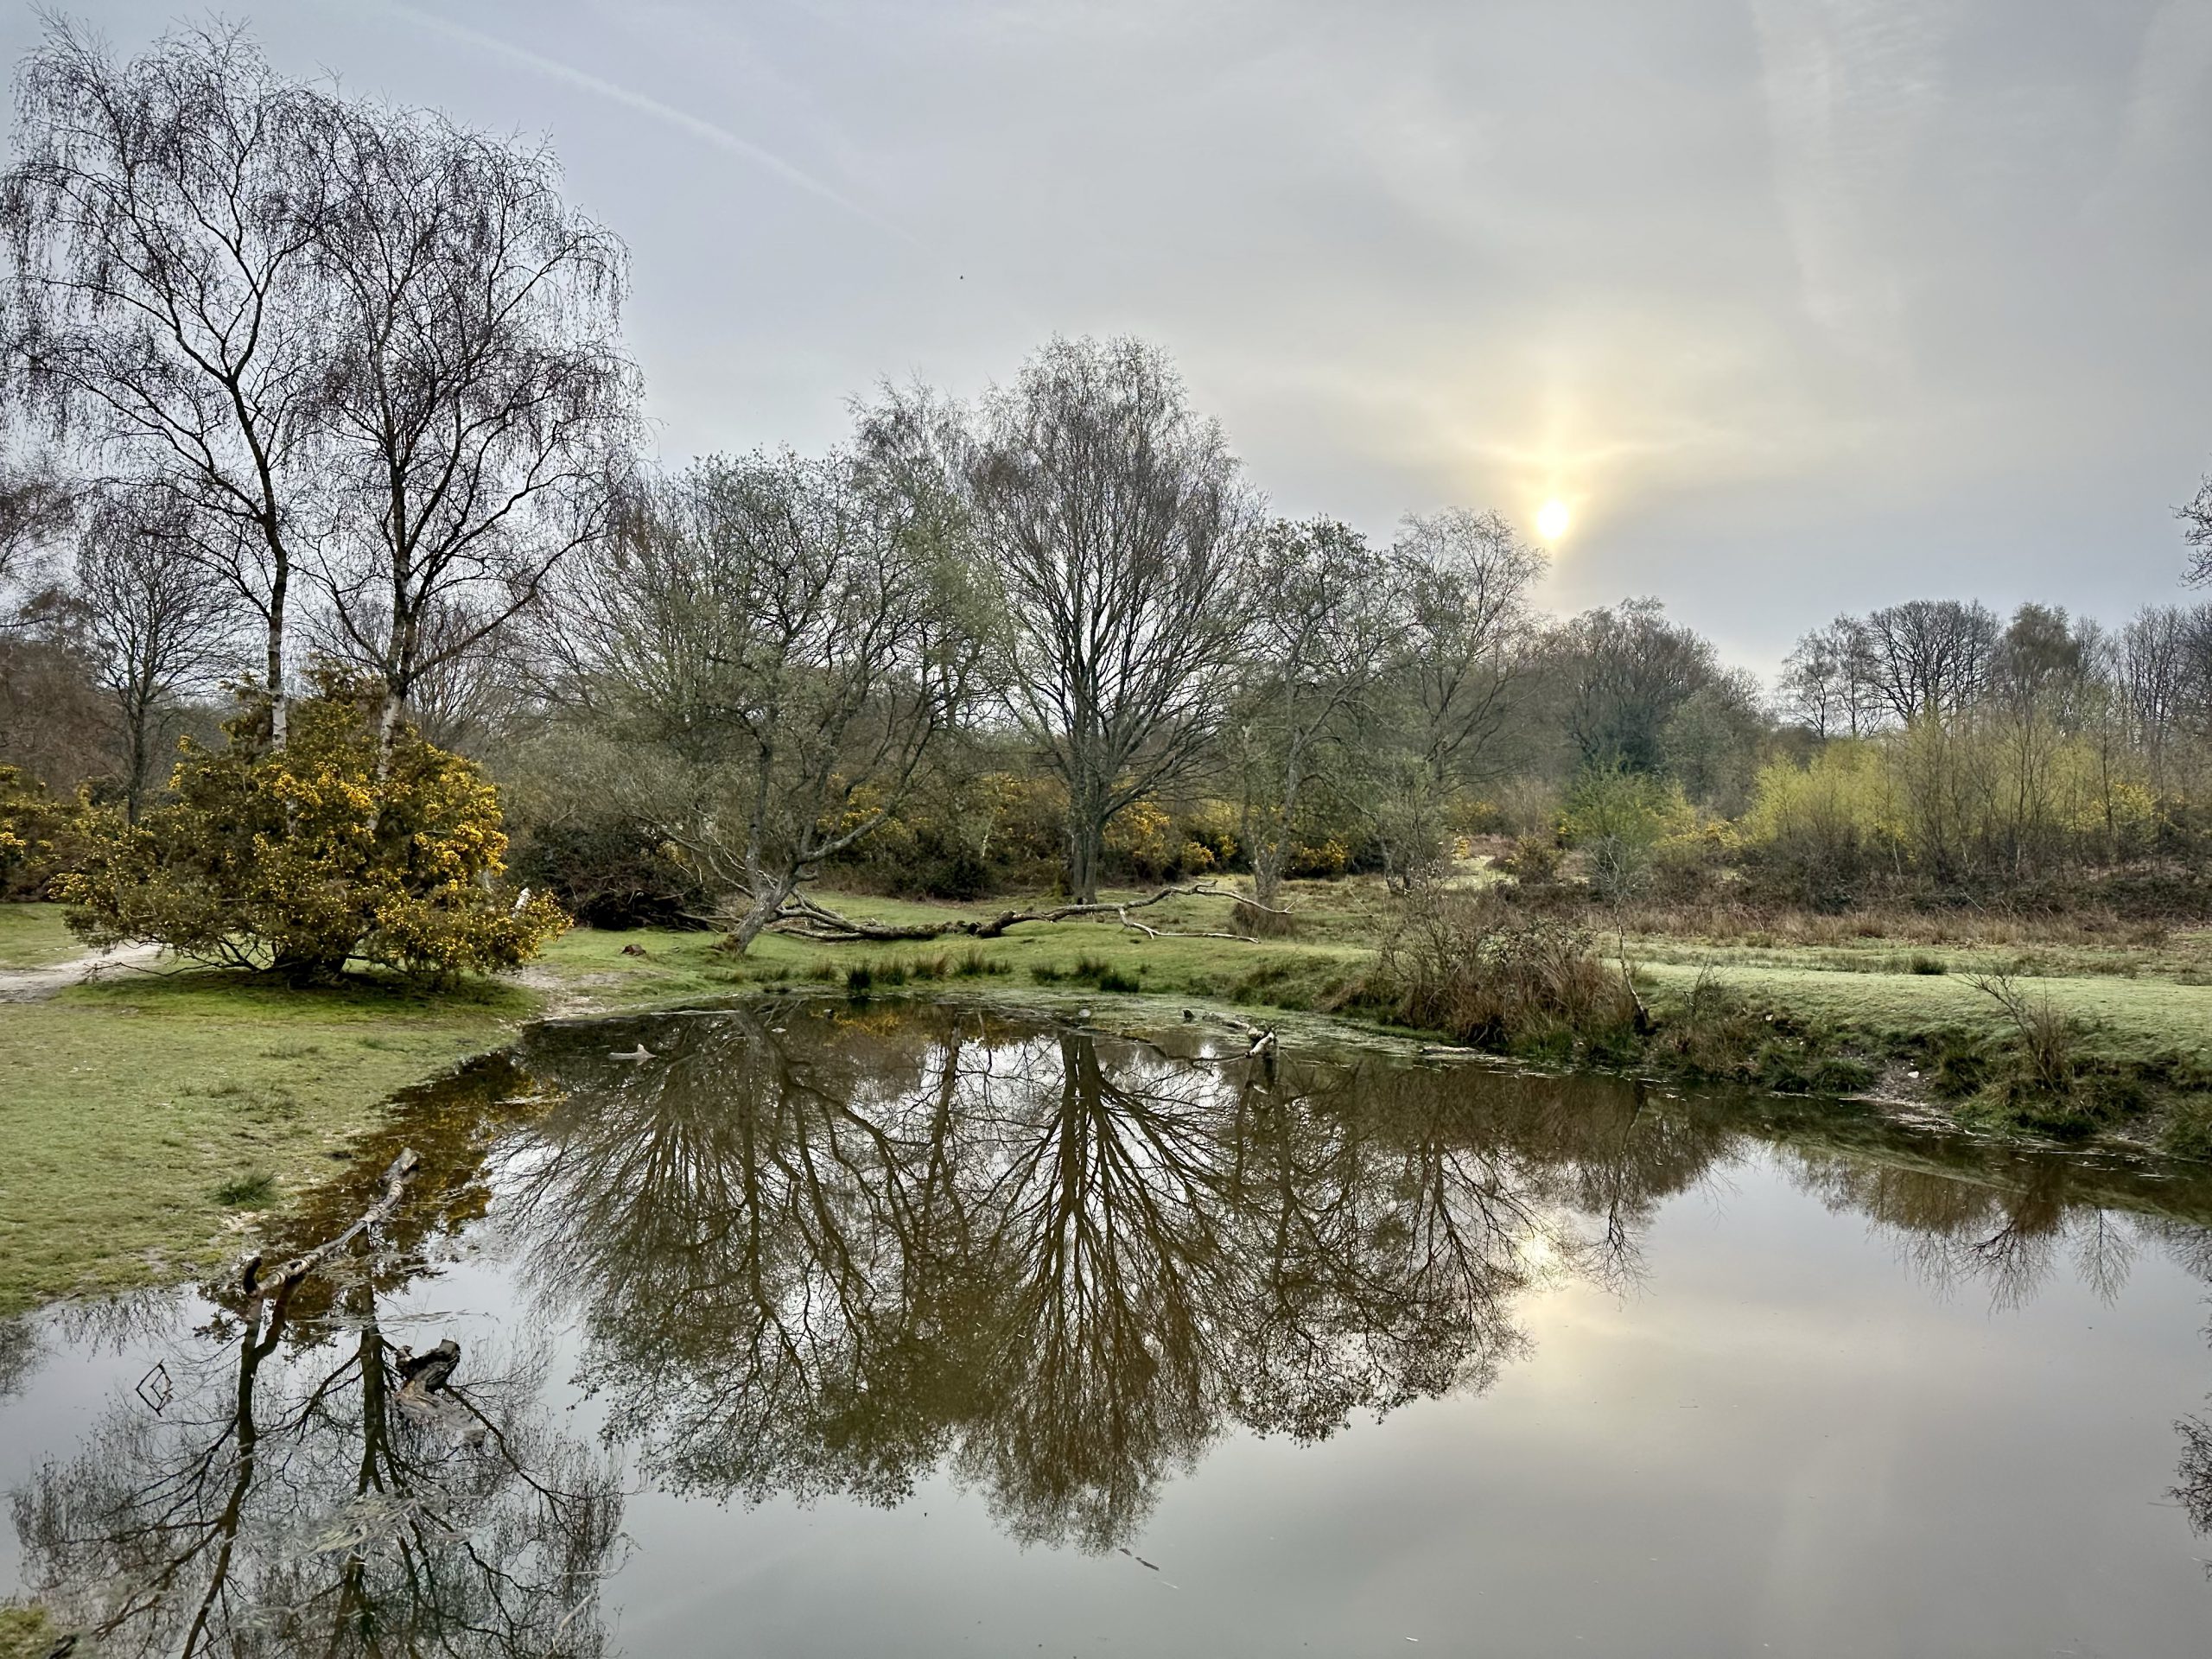 Day 106.4 – Headley ponds